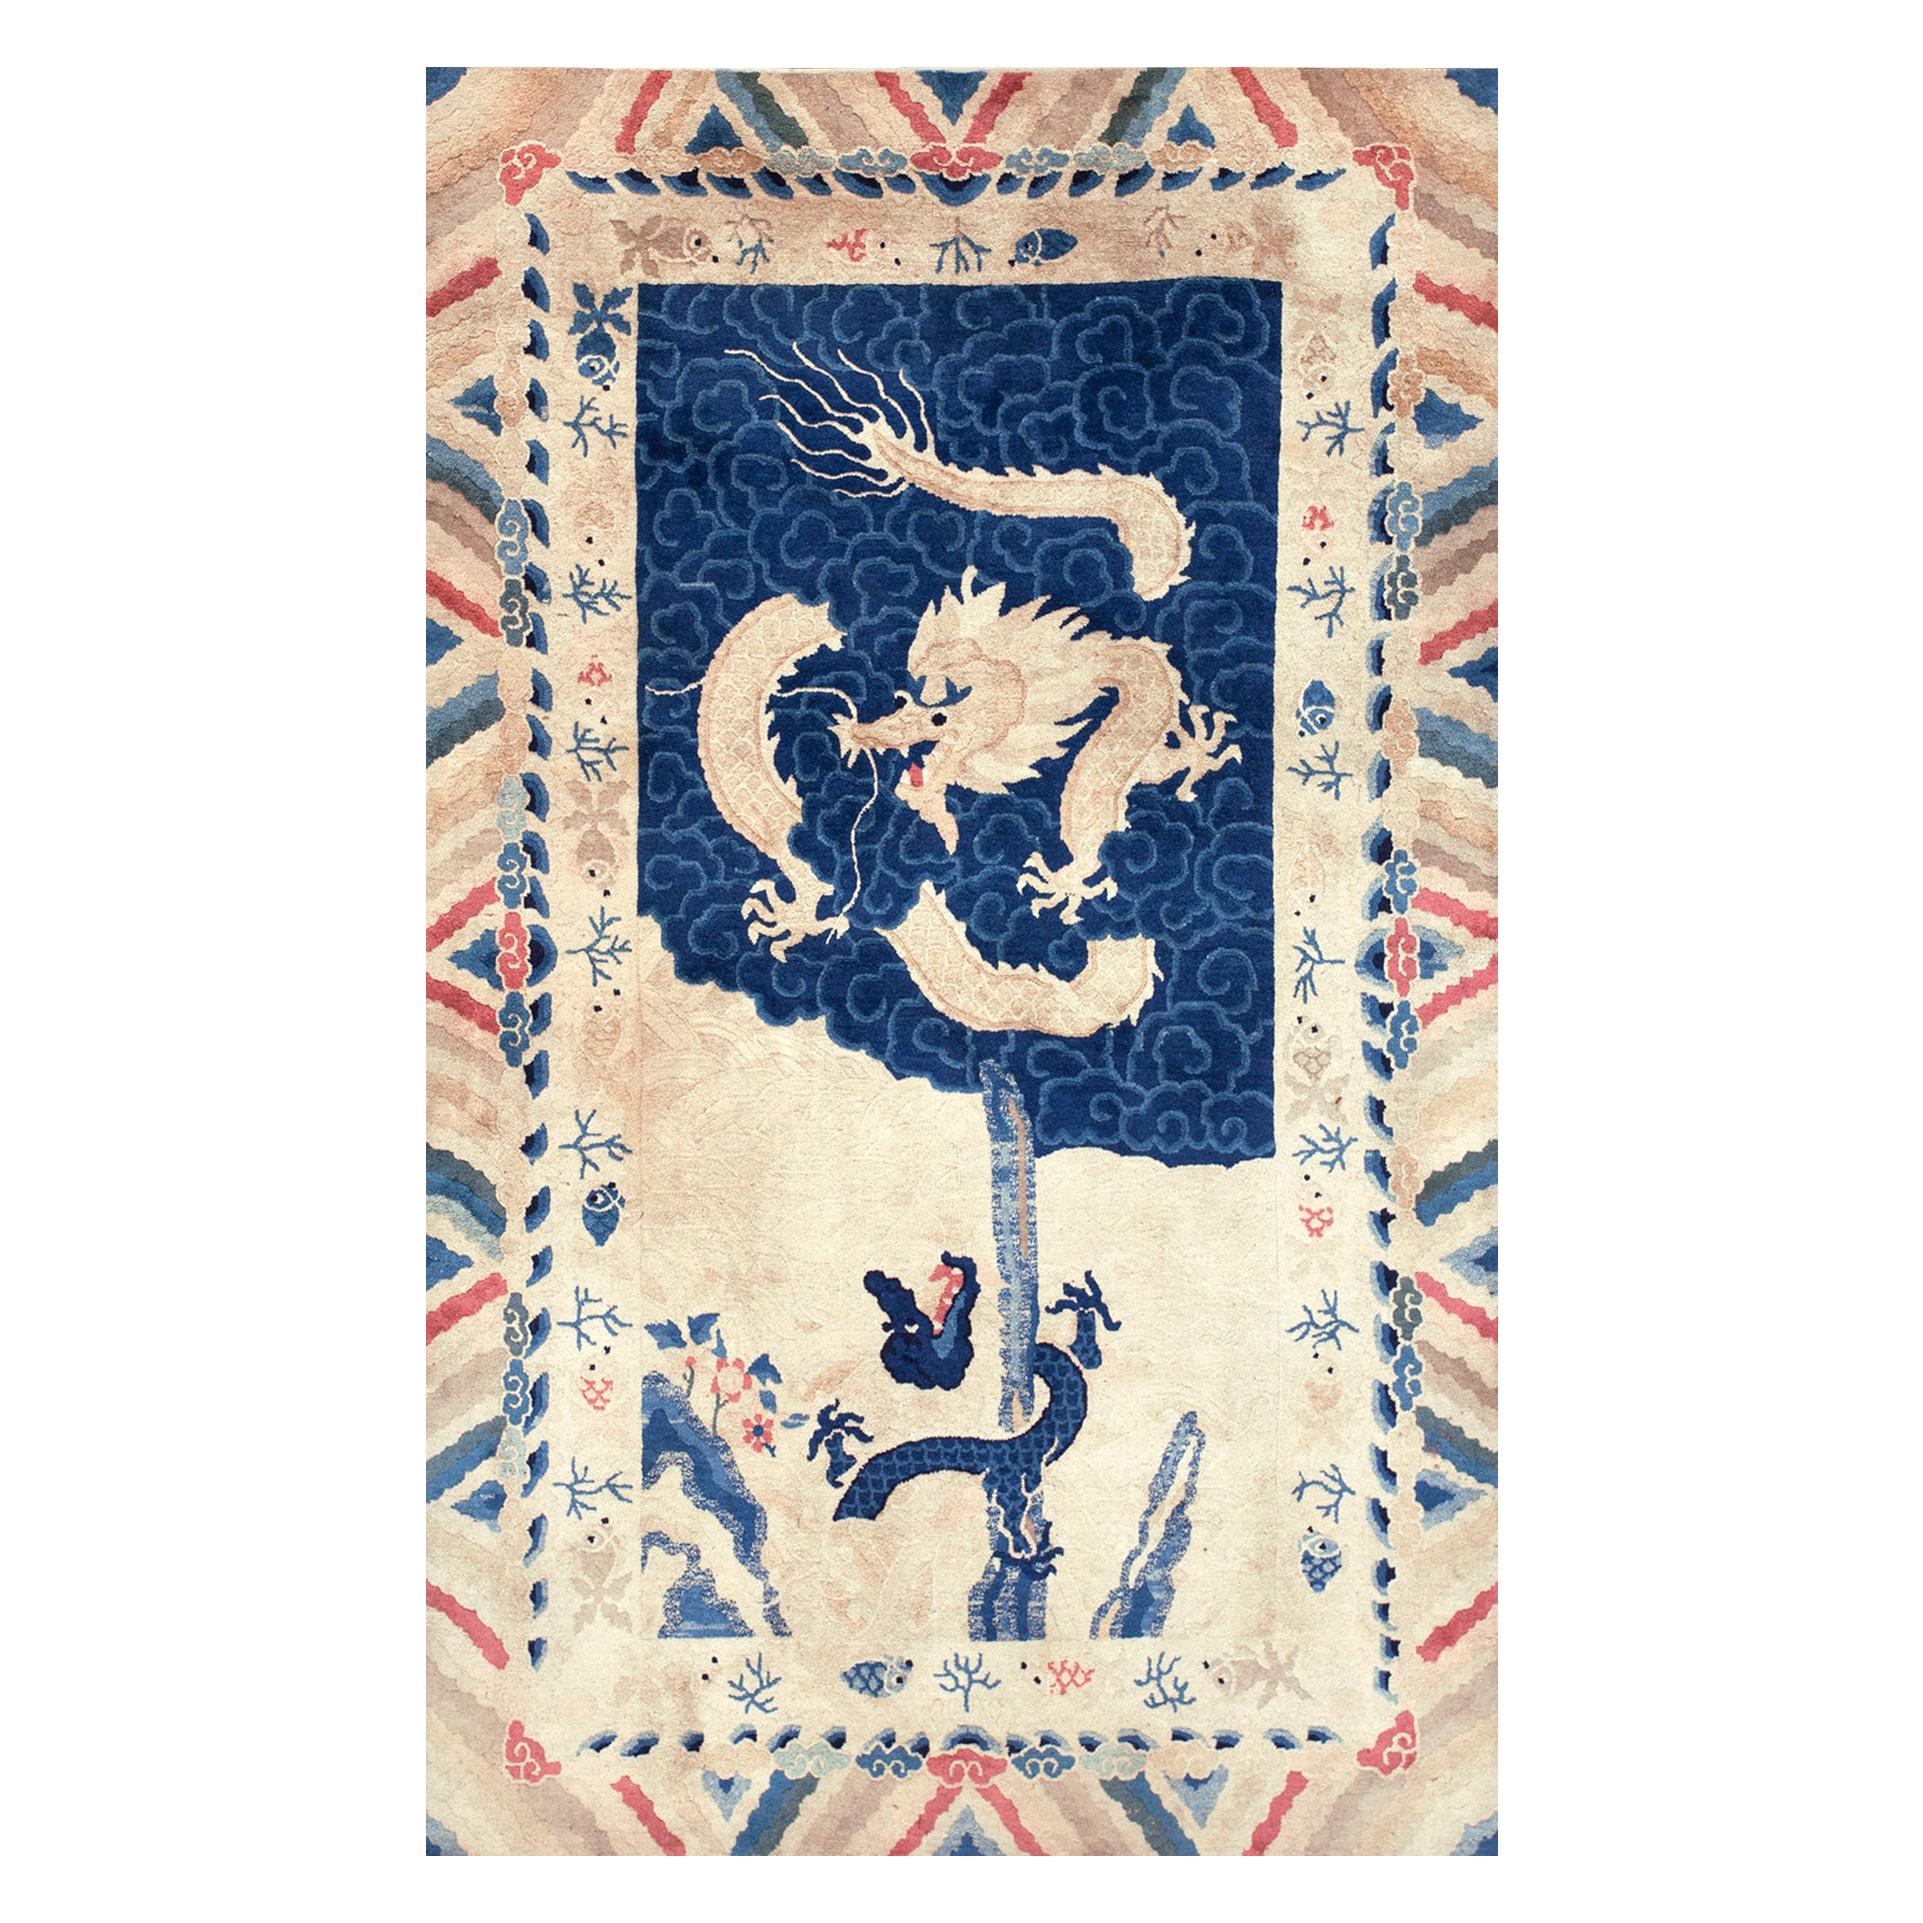 Tapis chinois du début du 20e siècle avec dragon de Pékin ( 4'2" x 6'10" - 127 x 208 )